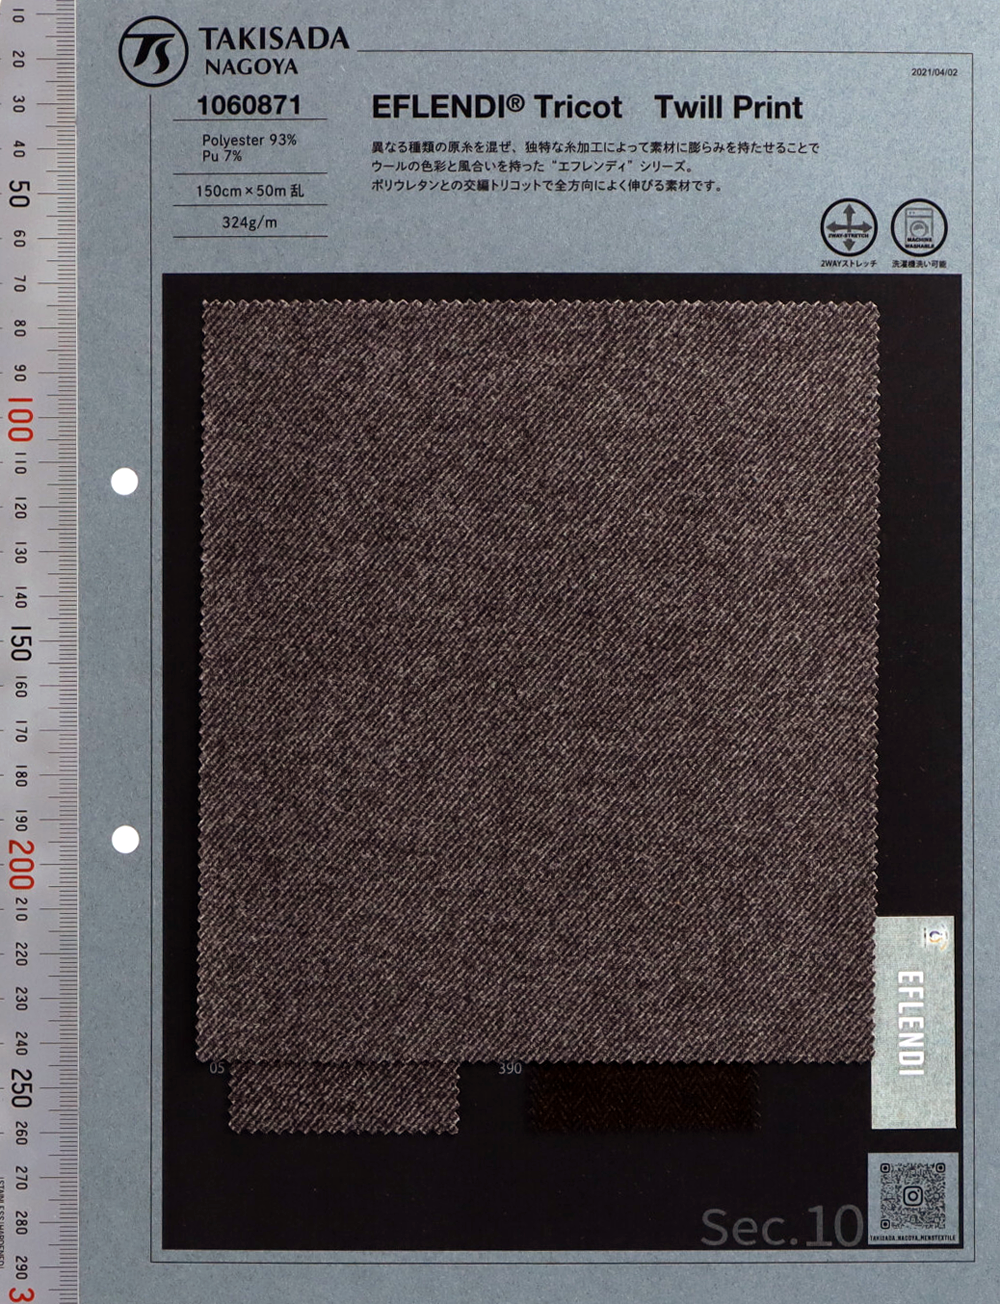 1060871 EFLENDI® Tricot-Print[Textilgewebe] Takisada Nagoya